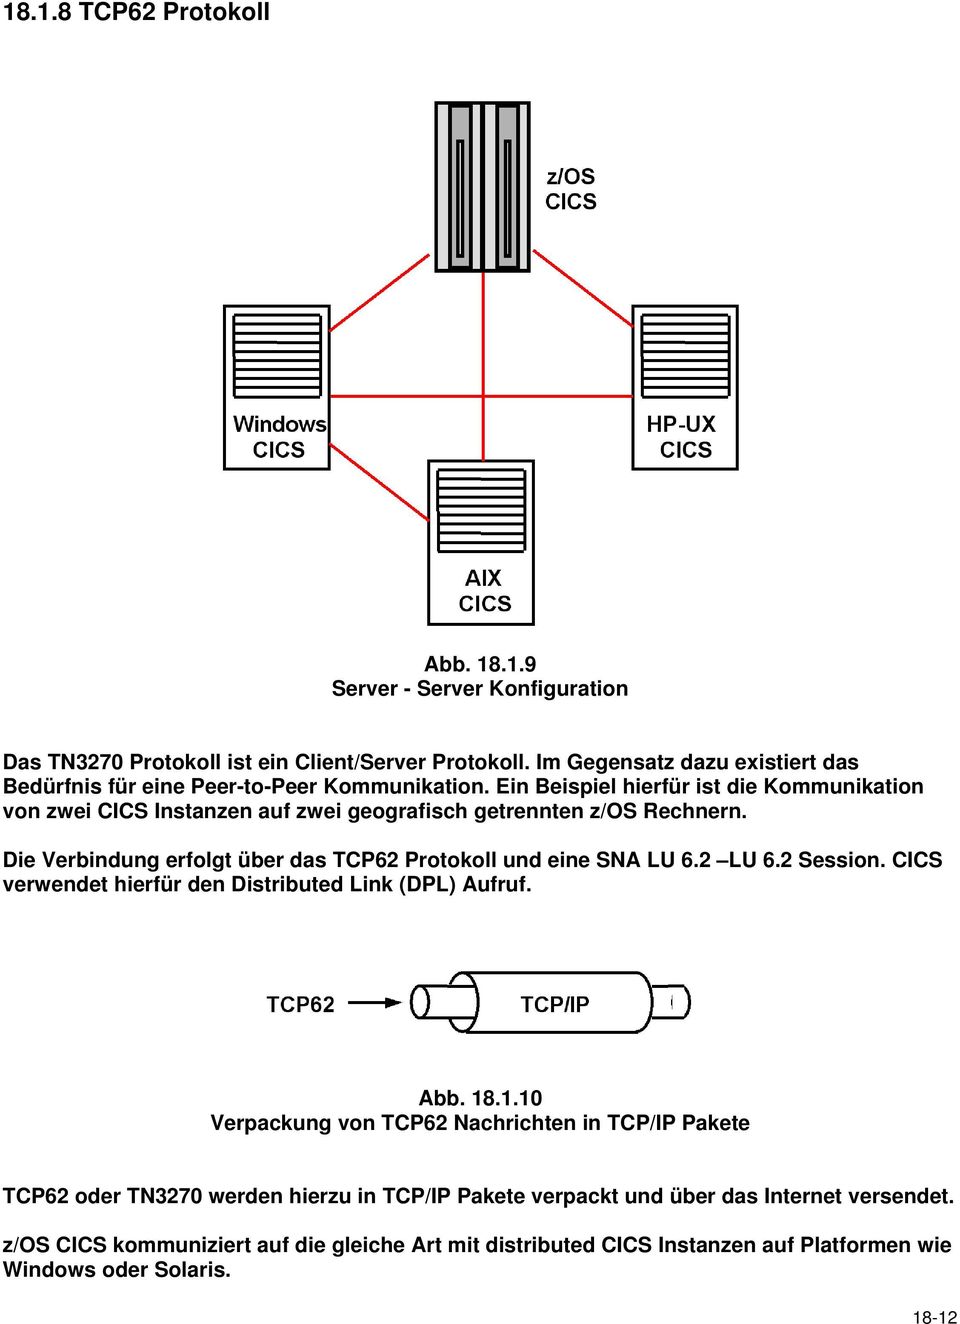 Ein Beispiel hierfür ist die Kommunikation von zwei CICS Instanzen auf zwei geografisch getrennten z/os Rechnern. Die Verbindung erfolgt über das TCP62 Protokoll und eine SNA LU 6.